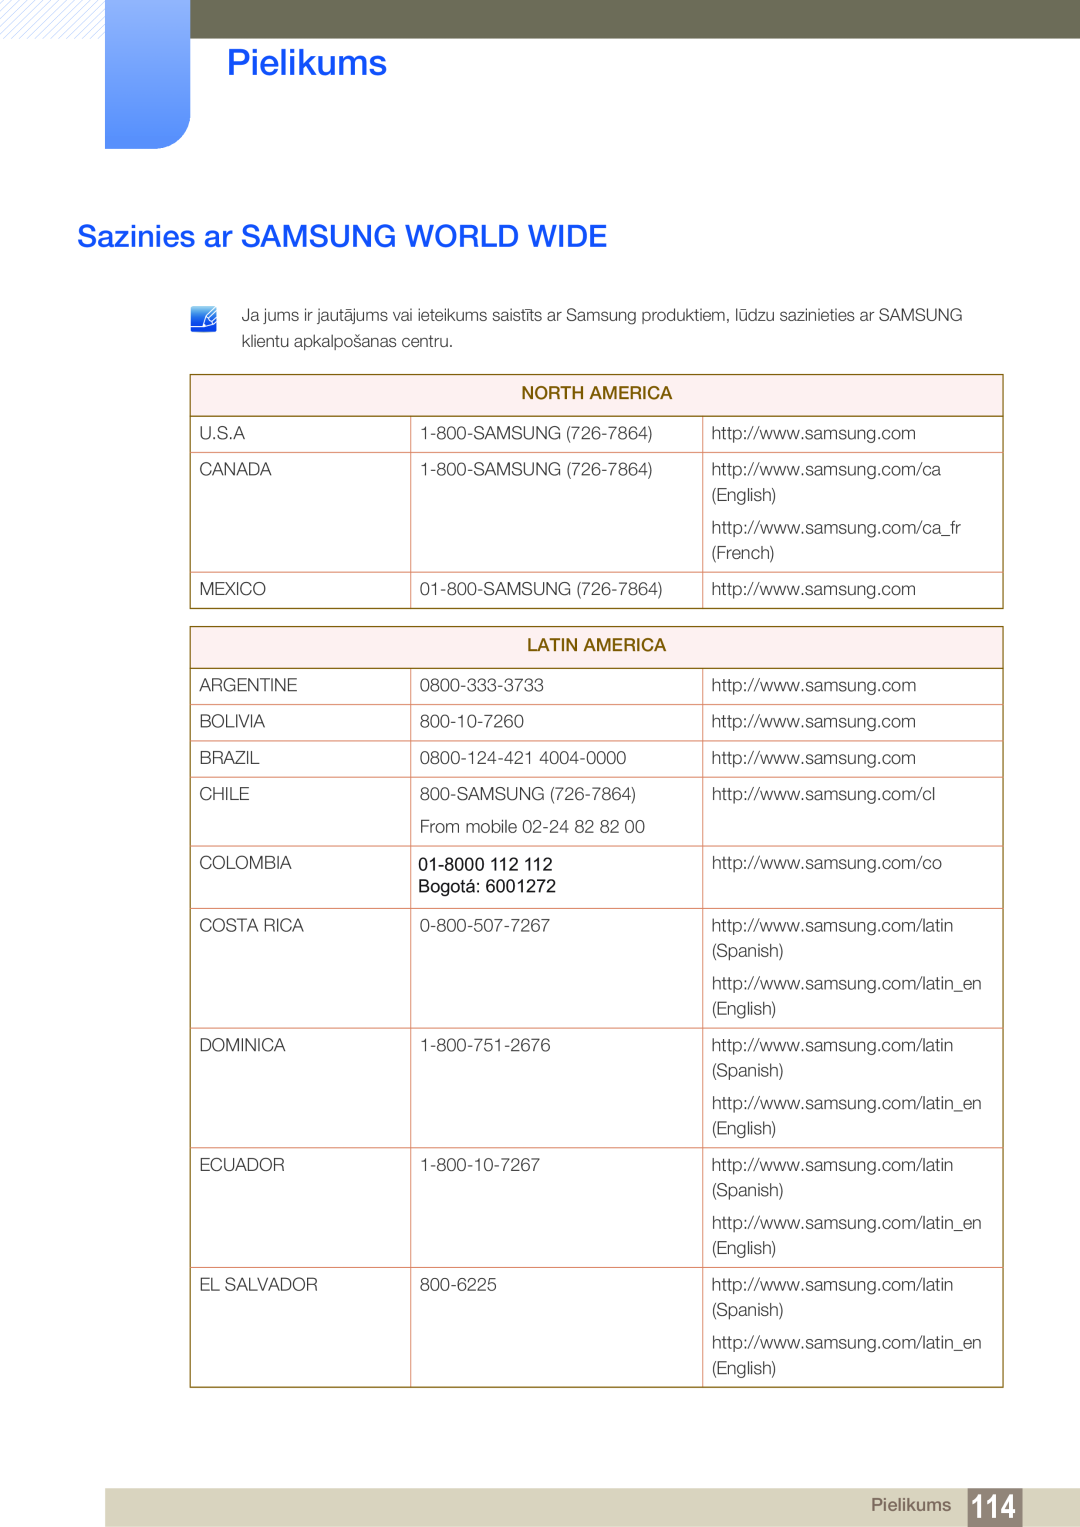 Samsung LS22C45KMWV/EN, LS22C45KMSV/EN, LS22C45KMS/EN, LS23C45KMS/EN, LS19C45KMR/EN Pielikums, Sazinies ar SAMSUNG WORLD WIDE 